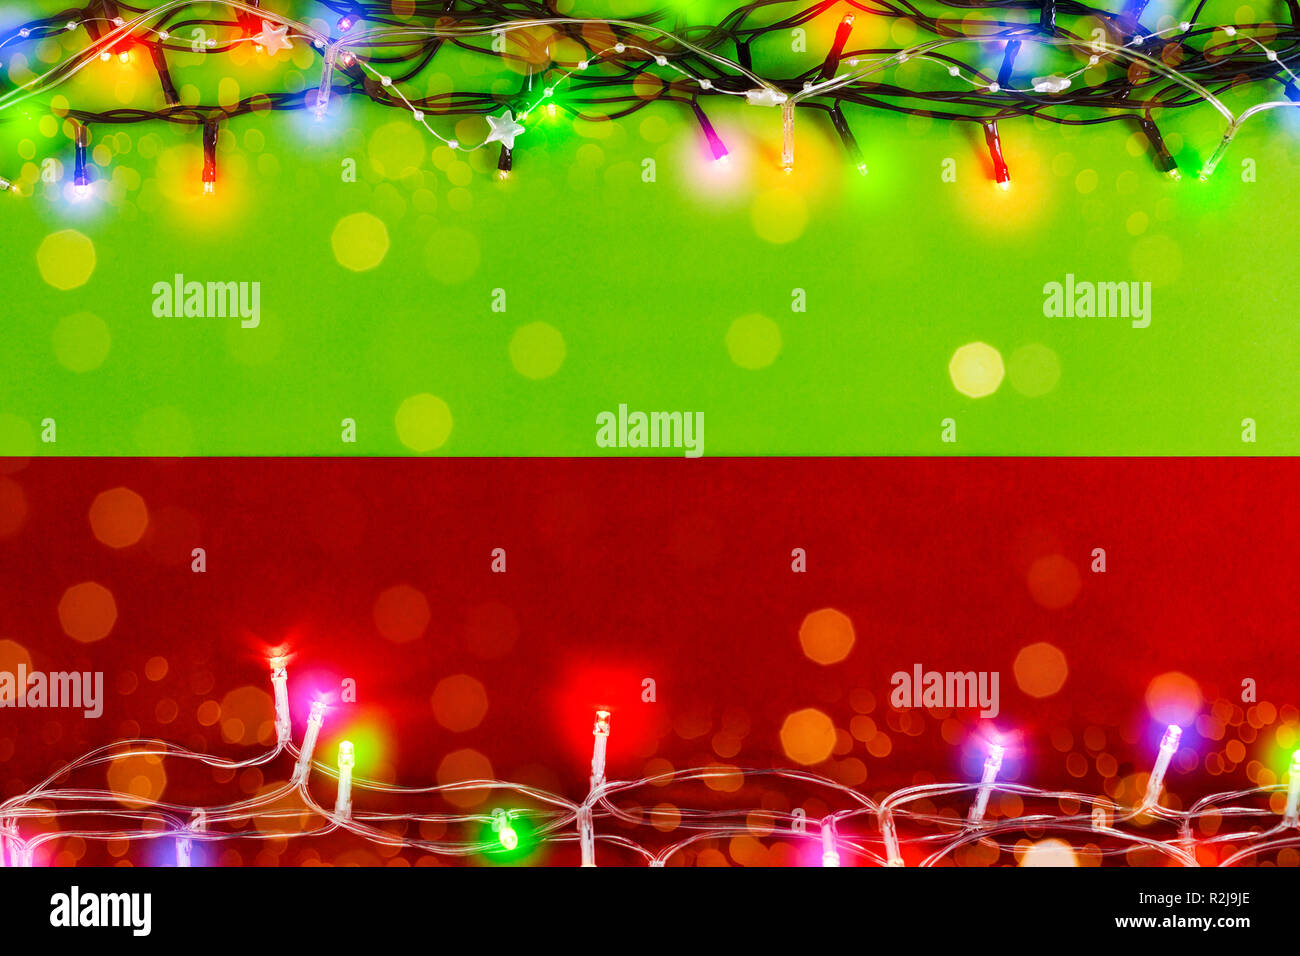 Weihnachtsbeleuchtung an der grünen und roten Hintergrund. Nützlich für Weihnachten/Neujahr Grußkarte Hintergrund Stockfoto